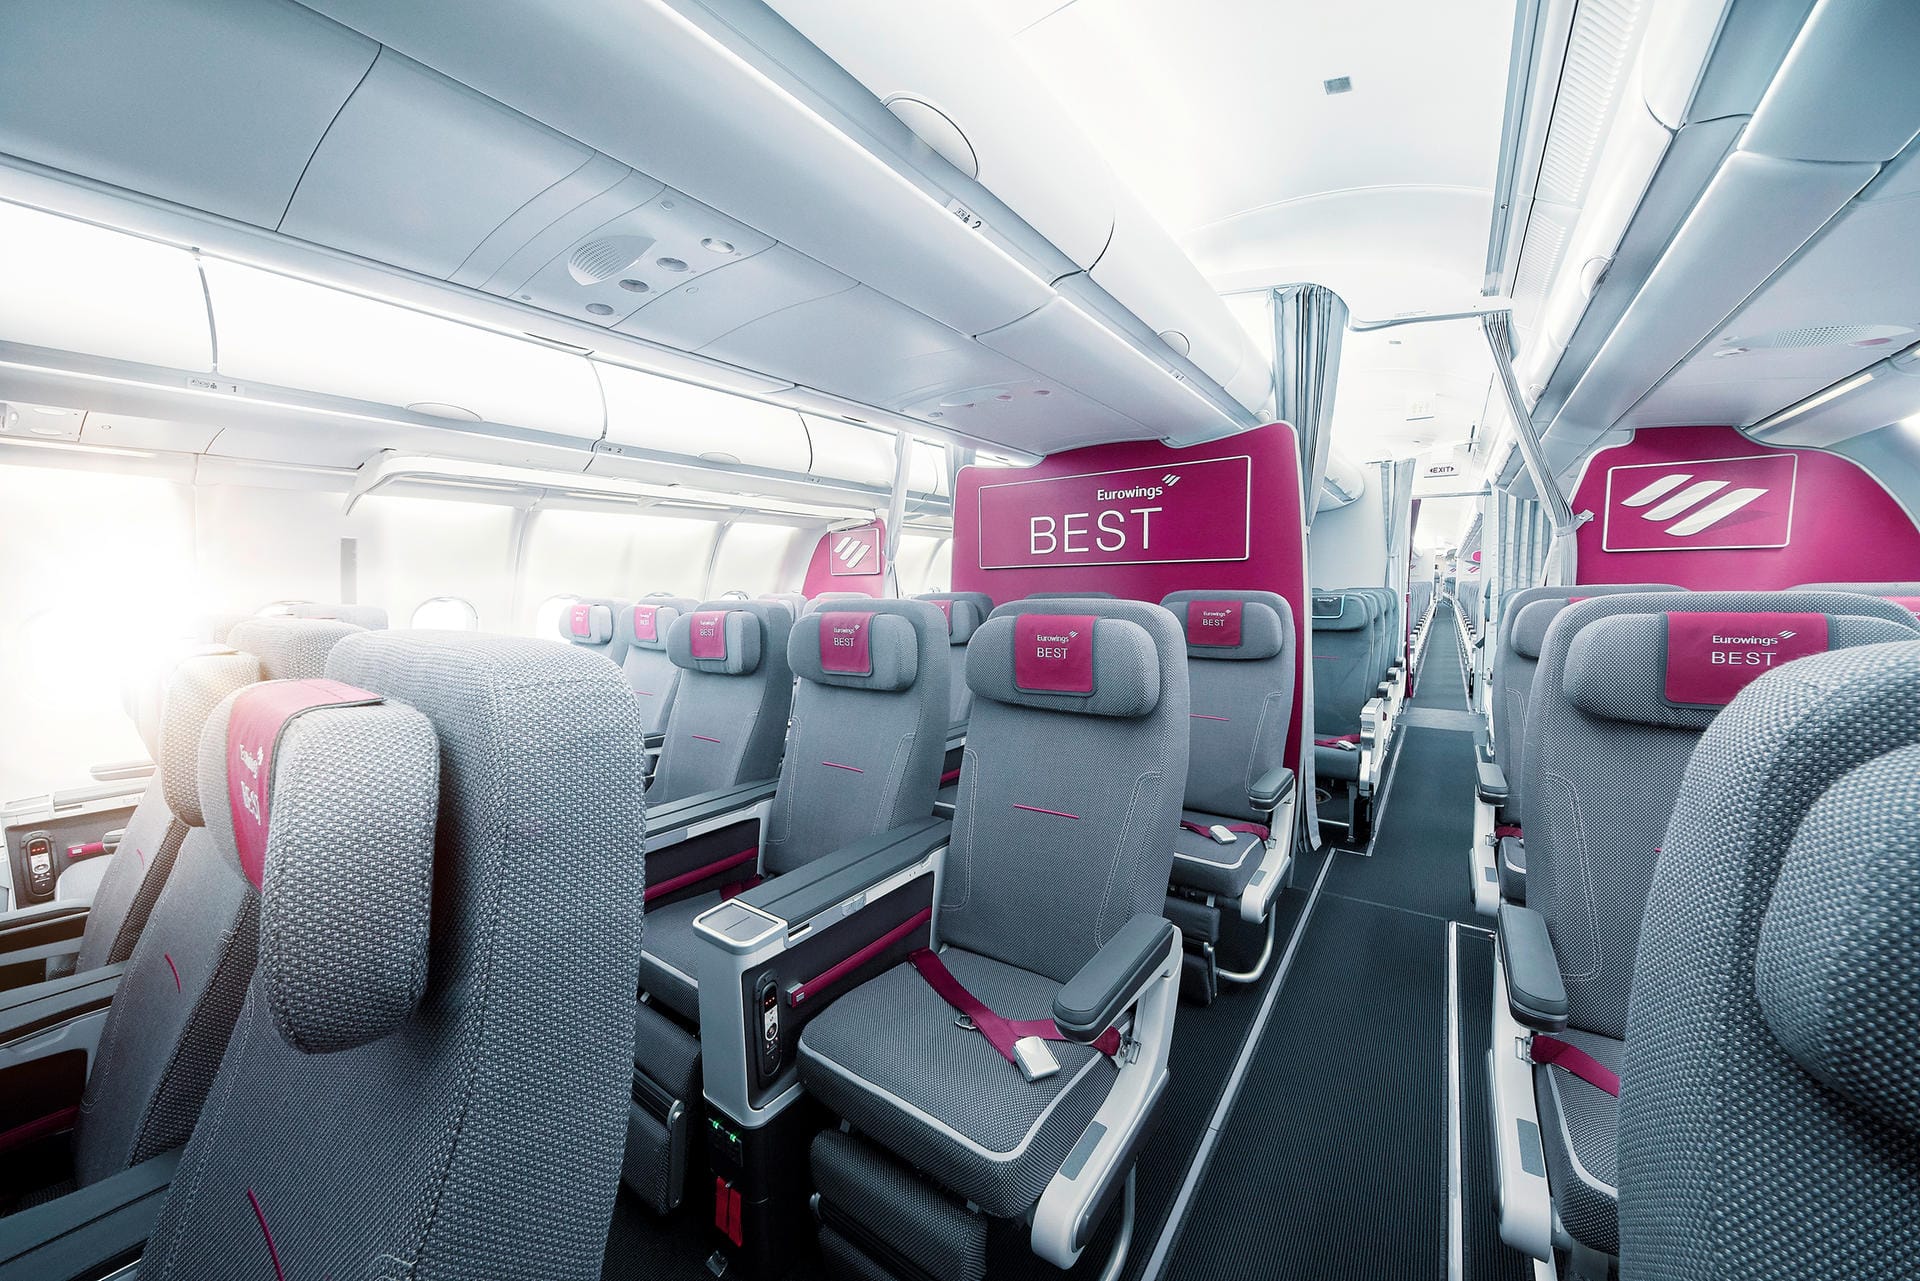 Noch mehr Platz haben Eurowings-Passagiere in den Best-Tarif-Sitzen ganz vorne. Hier starten die Ticketpreise bei rund 150 Euro für Kurz- und Mittelstrecke und 400 Euro für die Langstrecke.